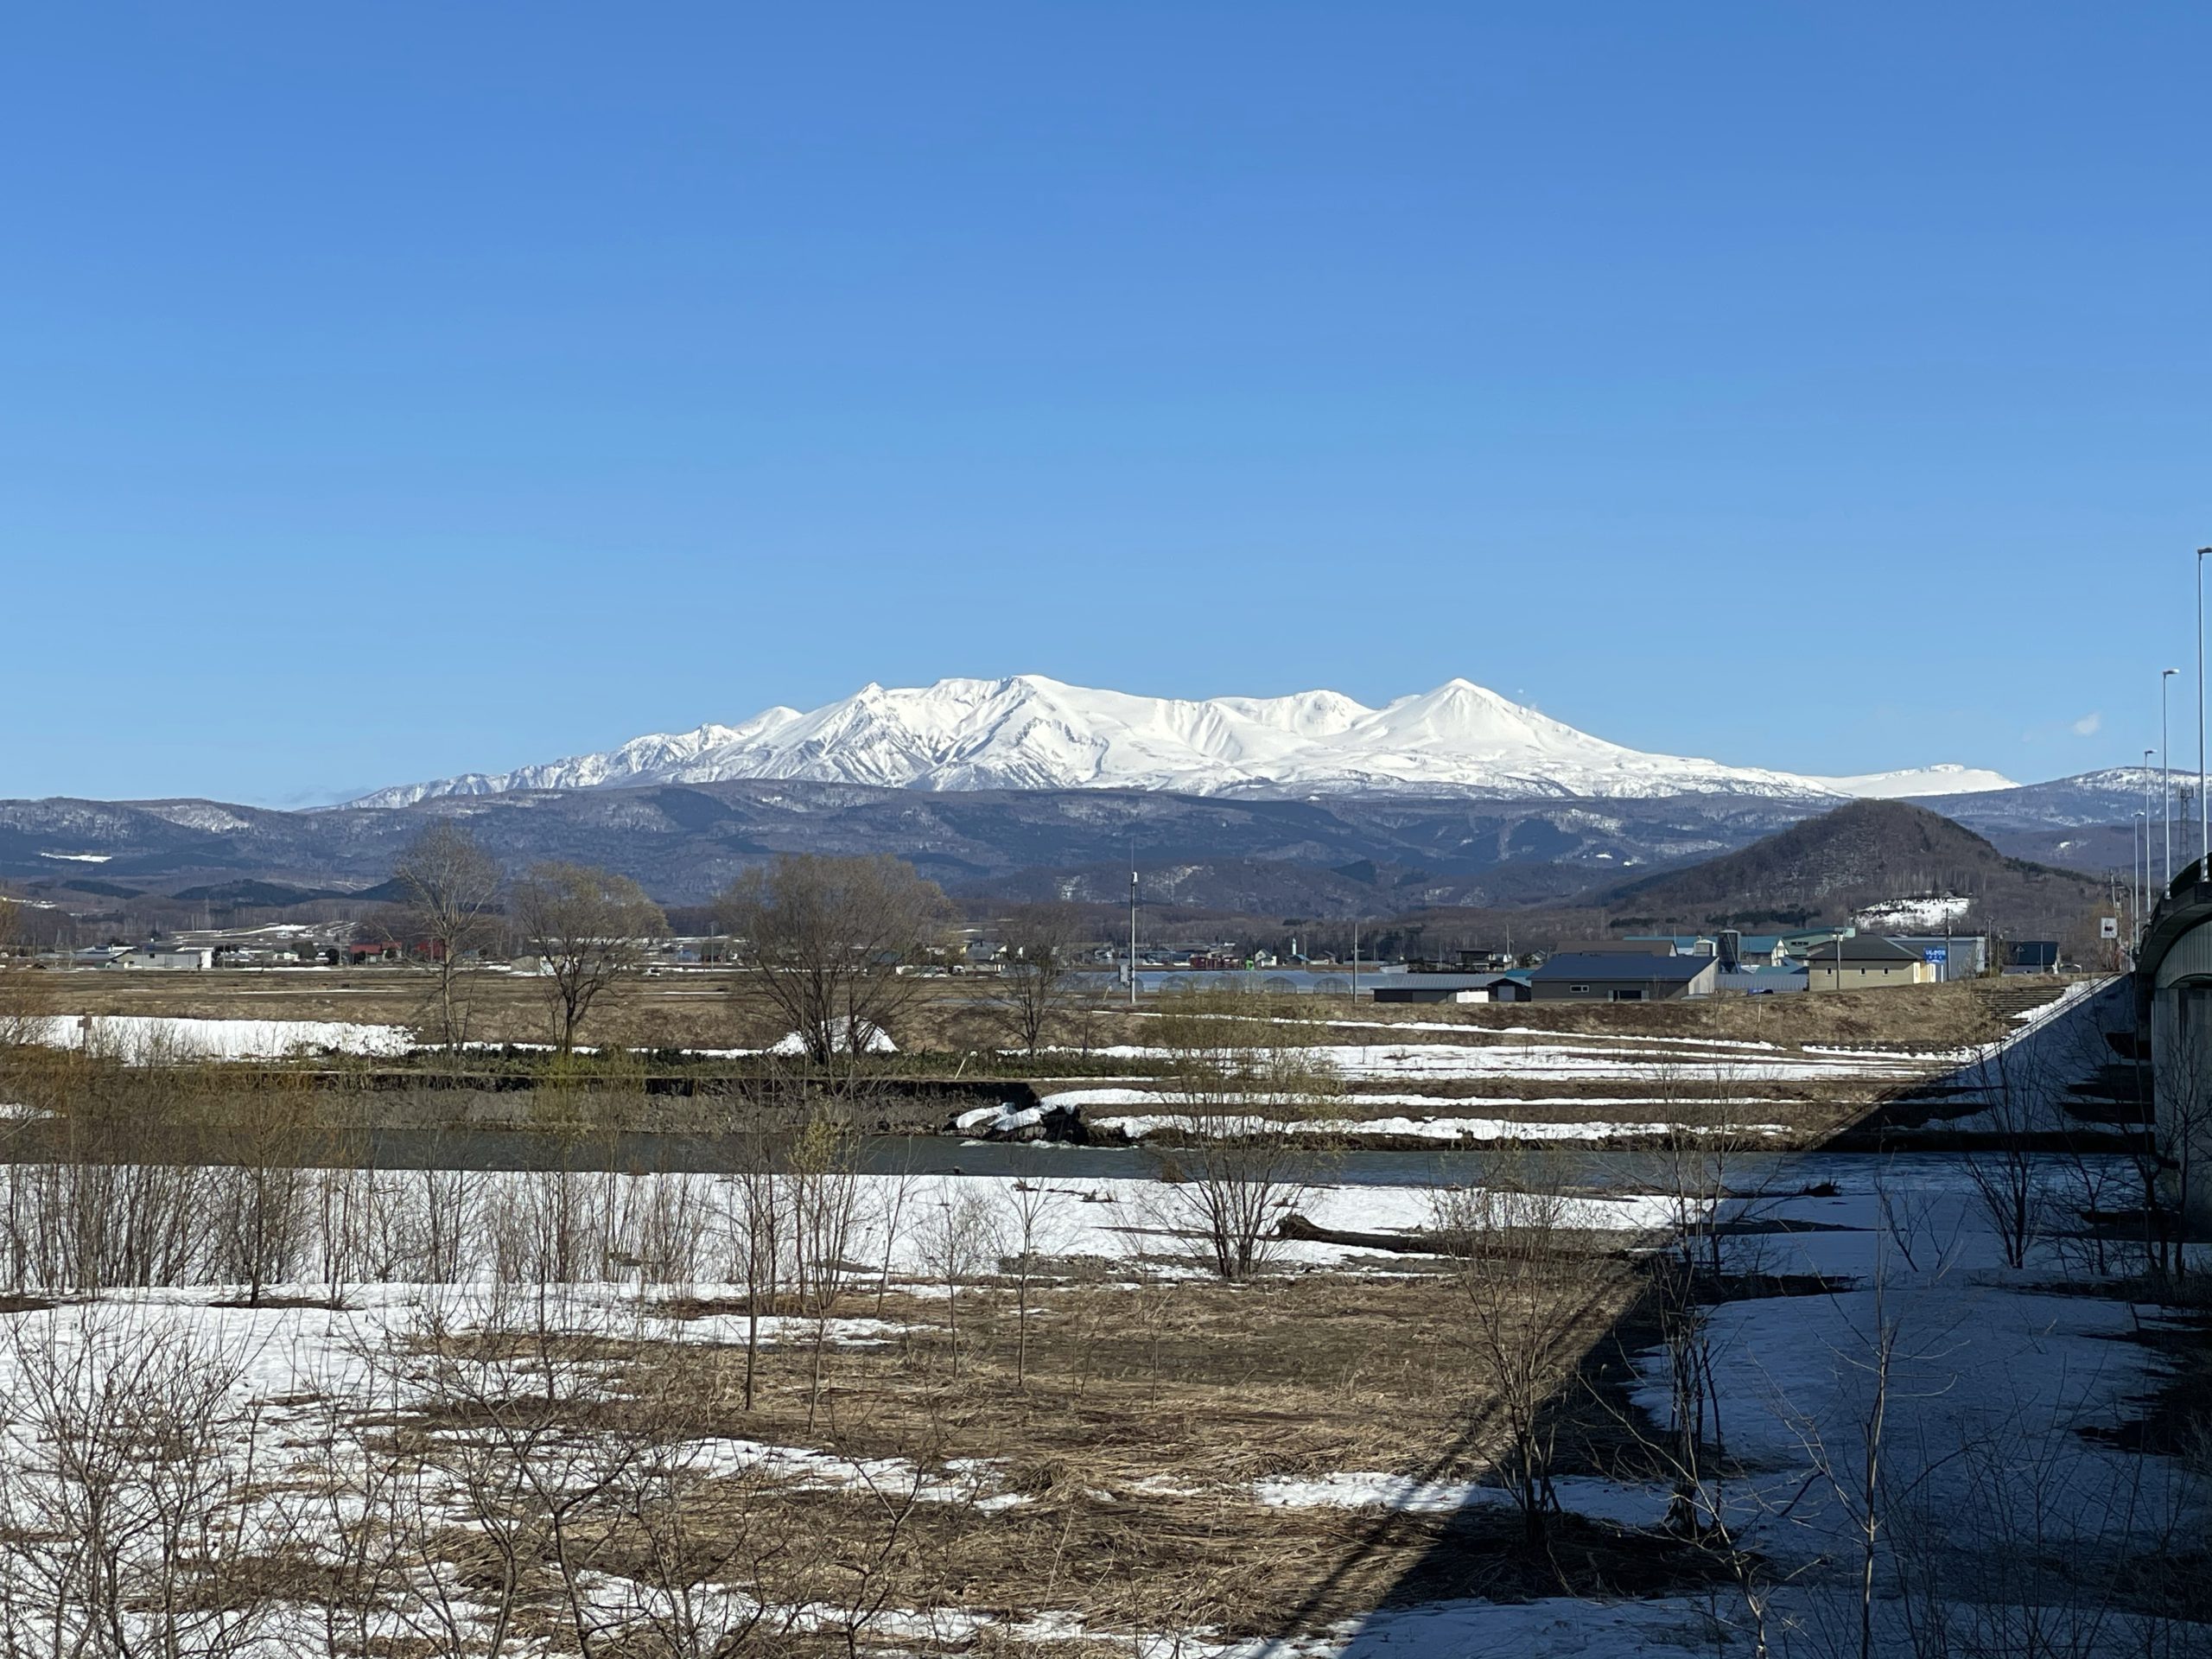 「世界一大雪山が綺麗に見えるまち」から見た絶景大雪山-比布町内から見た風景|社長のブログ | 大熊養鶏場